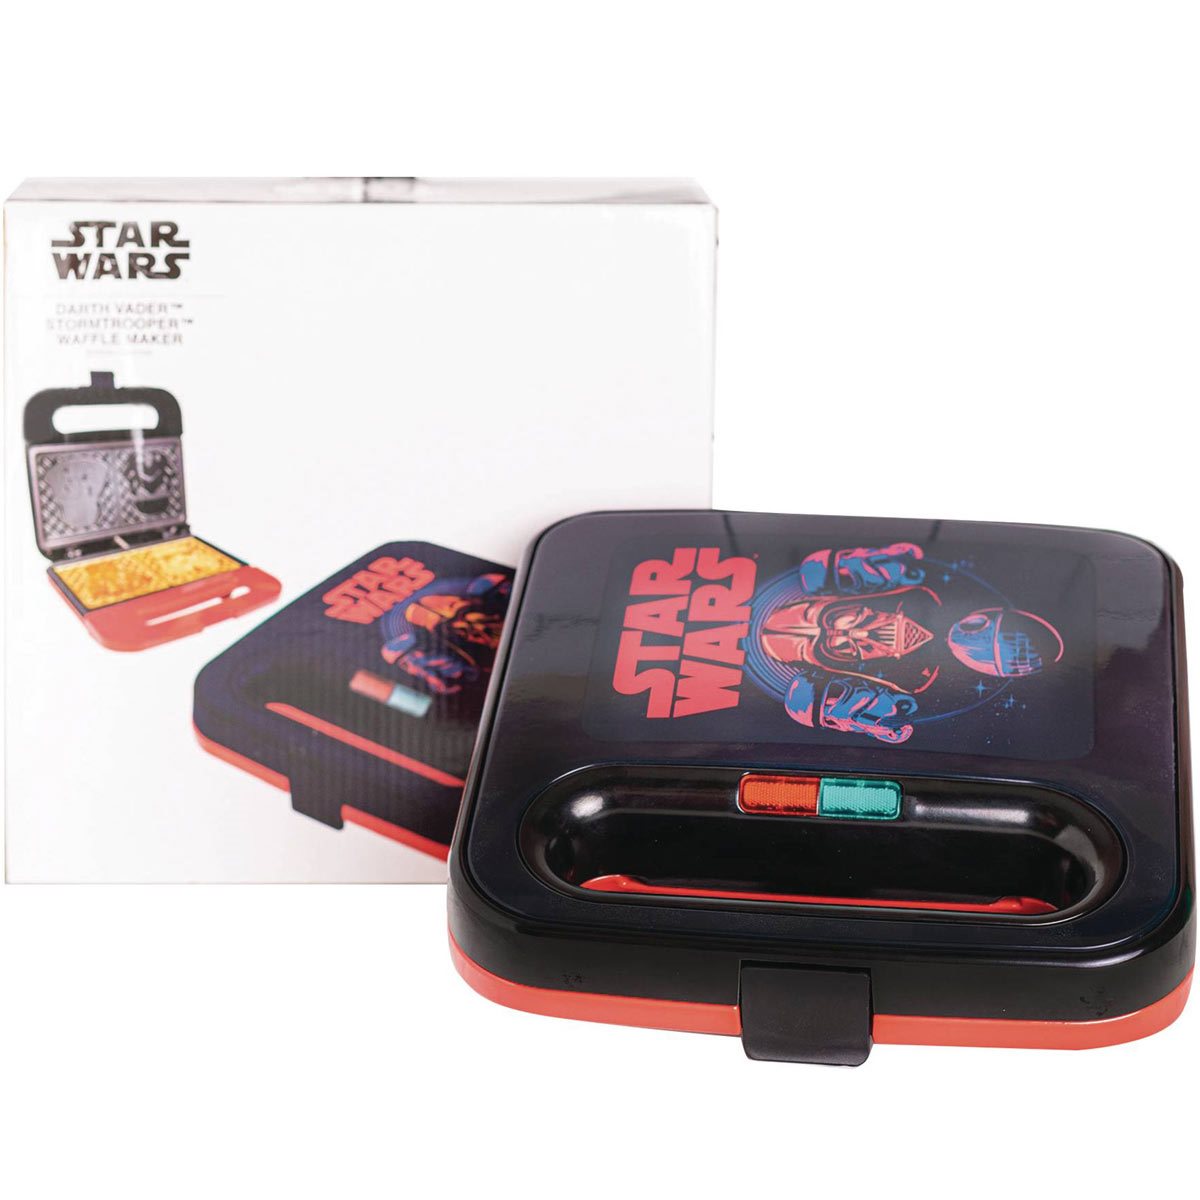 Uncanny Brands Star Wars Mini Waffle Maker Set- Darth Vader & Death Star